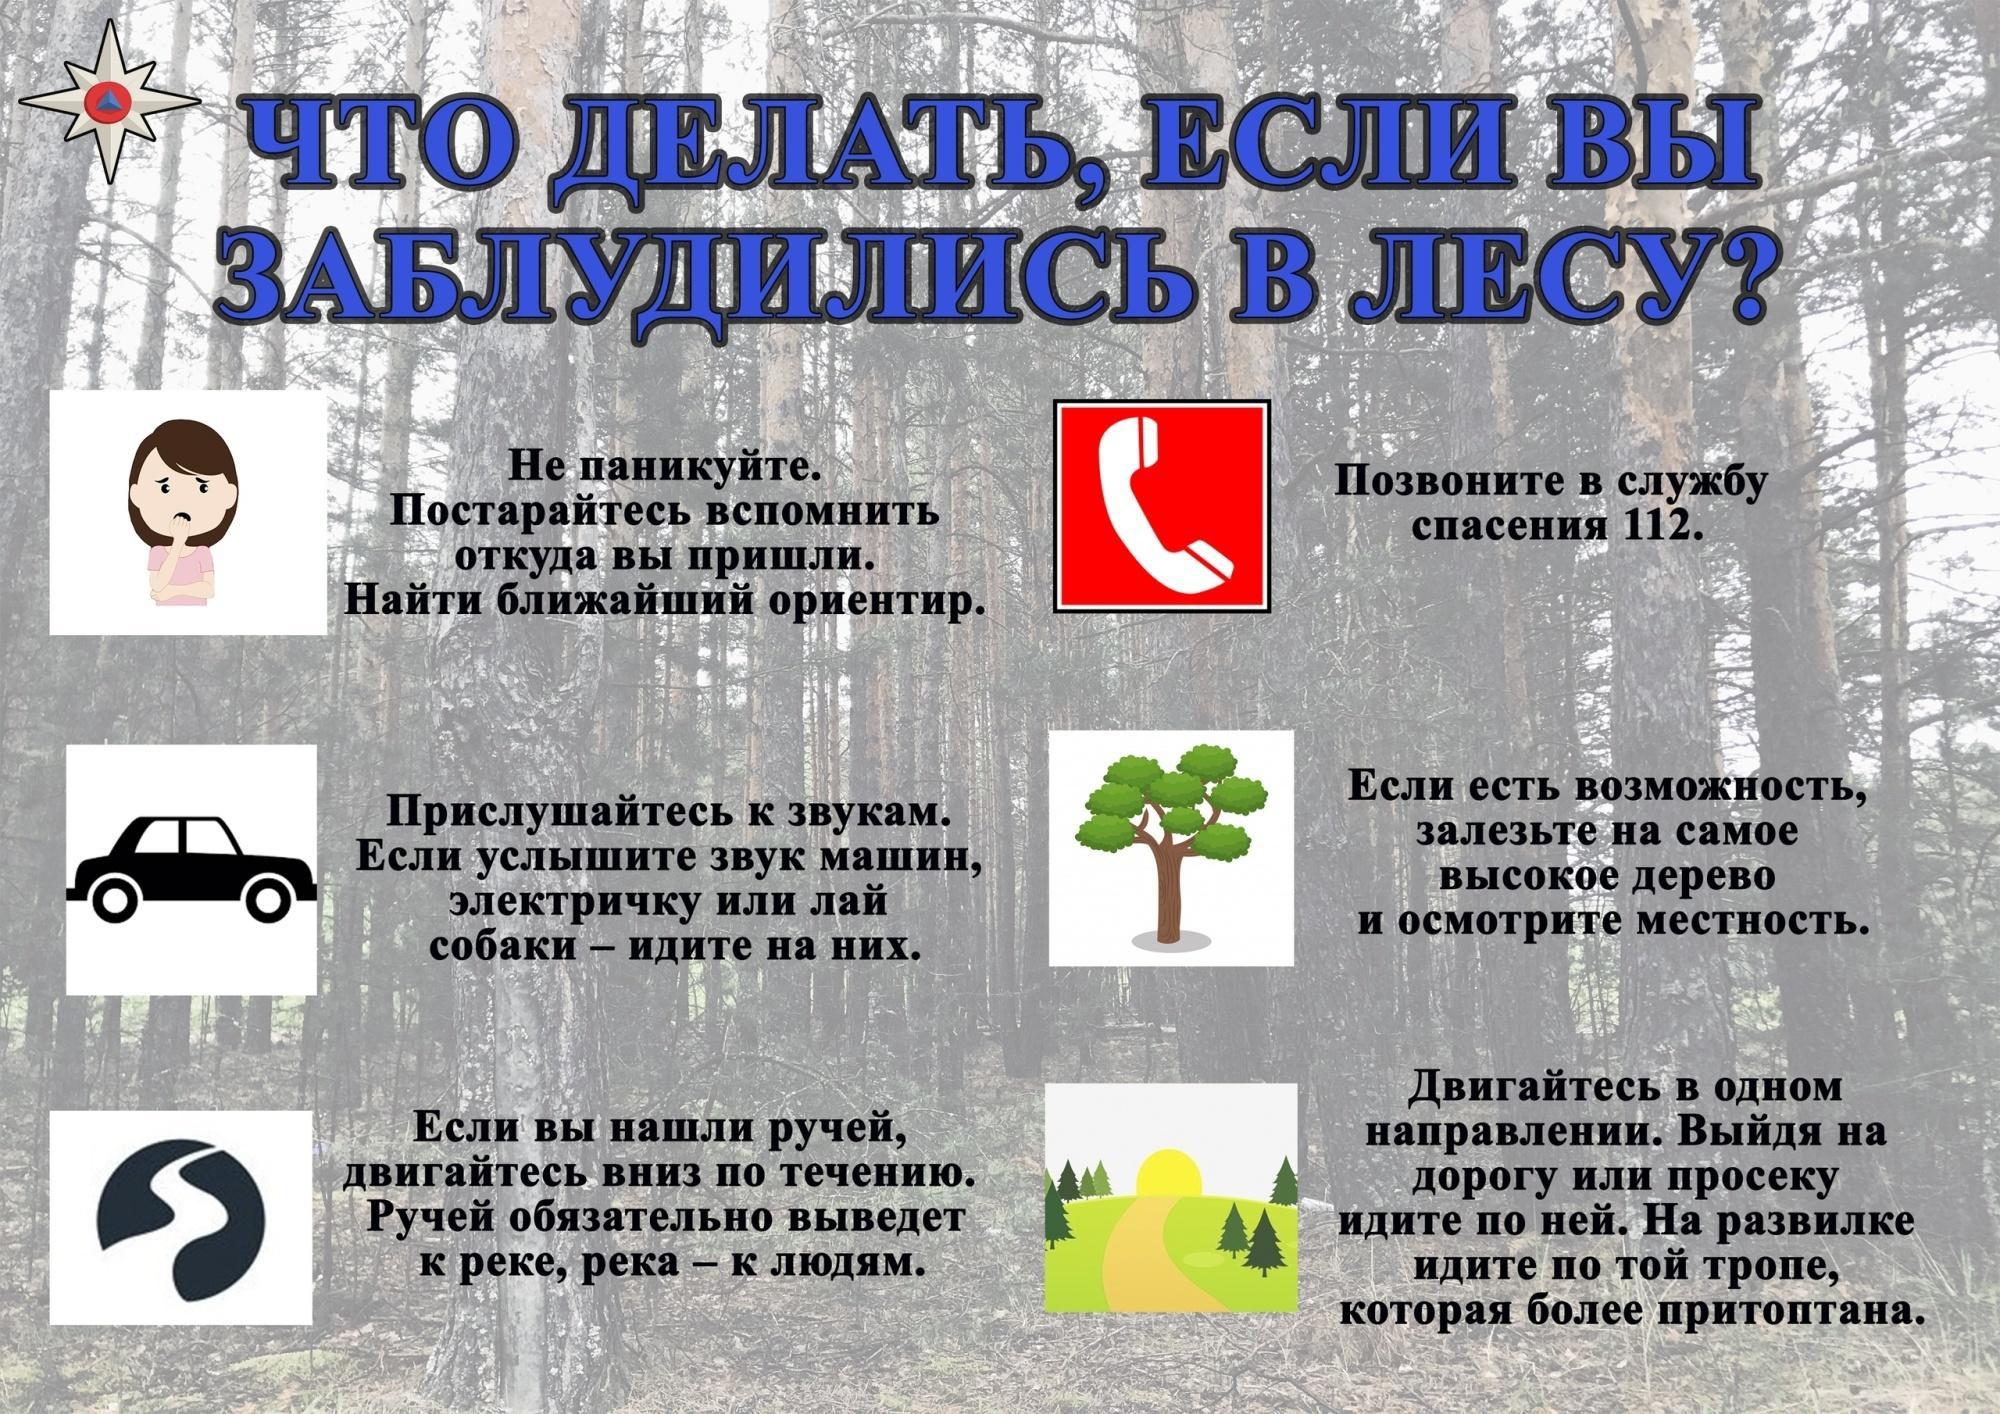 Основные правила, которые важно соблюдать, отправляясь в лес:.